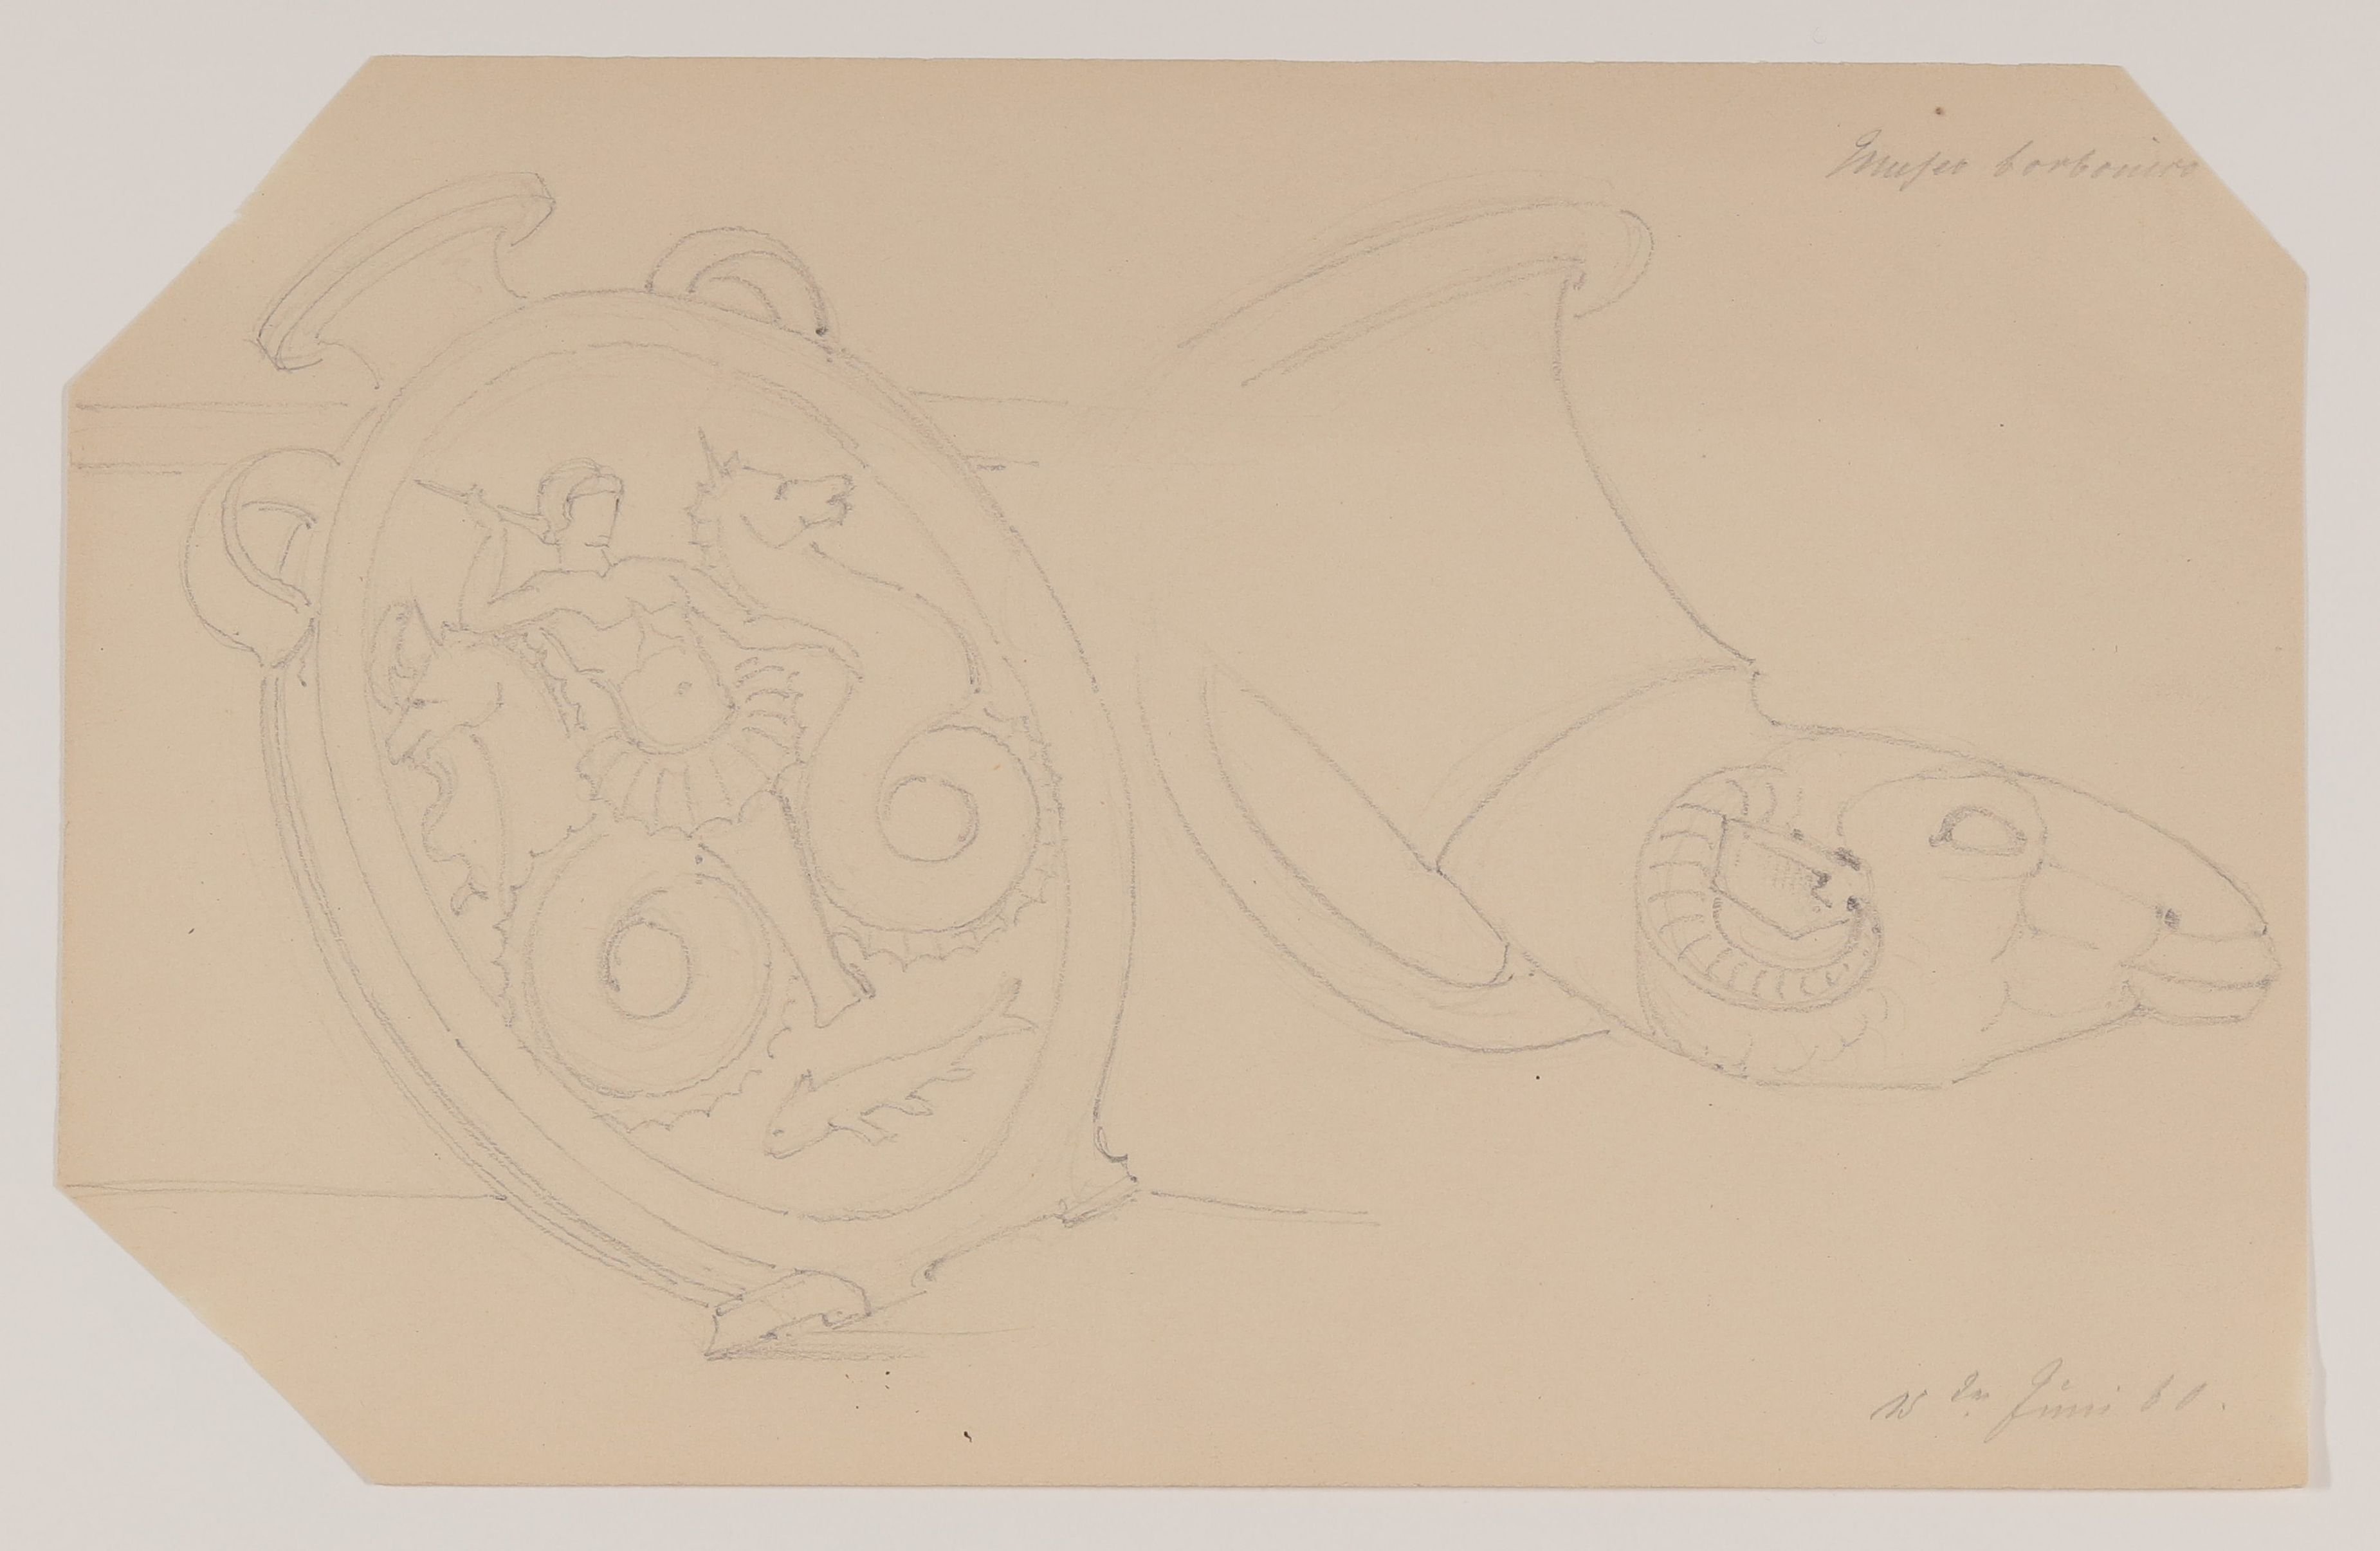 Ovales Gefäß und Rhyton aus dem ehem. Museo Borbonico in Neapel [aus einem Konvolut von 107 Blatt Architekturstudien und Skizzen einer Italienreise] (Freies Deutsches Hochstift CC BY-NC-SA)